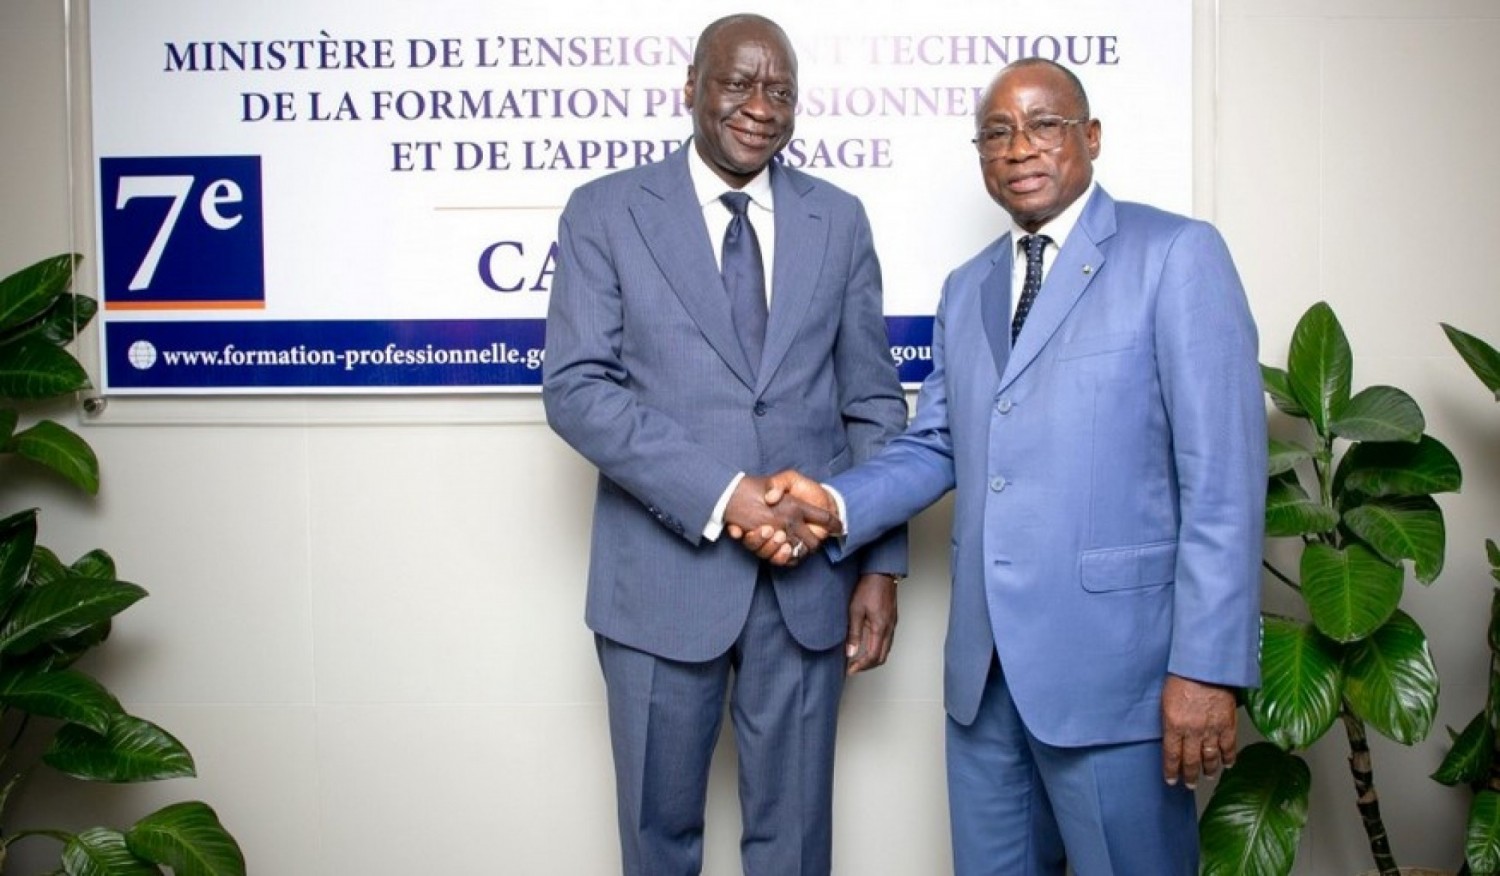 Côte d'Ivoire : Education-Formation, la Banque Mondiale réitère sa disponibilité  à accompagner les différents ministères sur la mise en œuvre de leurs visions et stratégies respectives